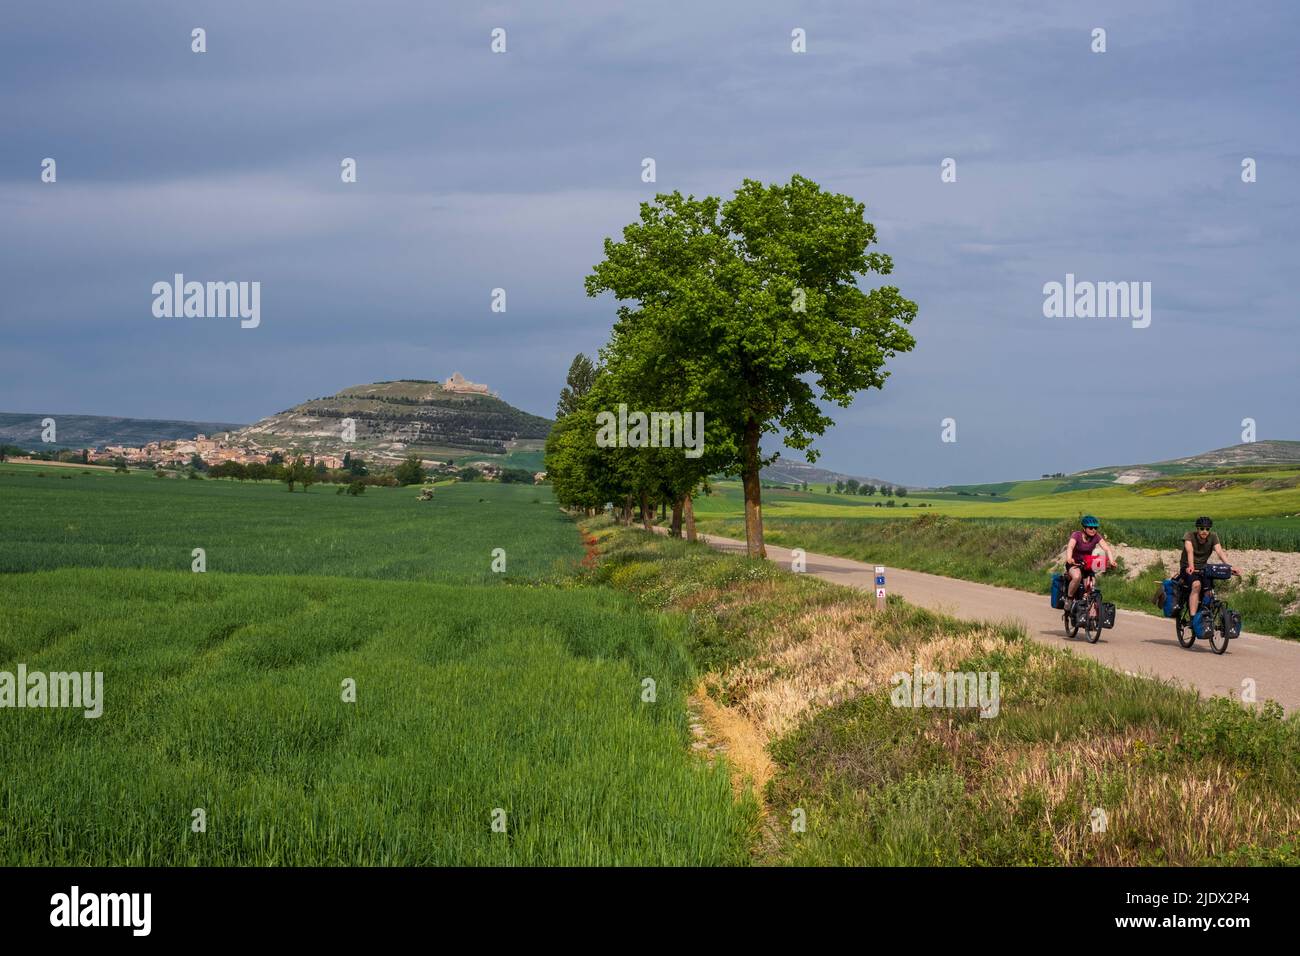 Spagna, Castilla y Leon, ciclisti provenienti da Castrojeriz sul Camino de Santiago. Foto Stock